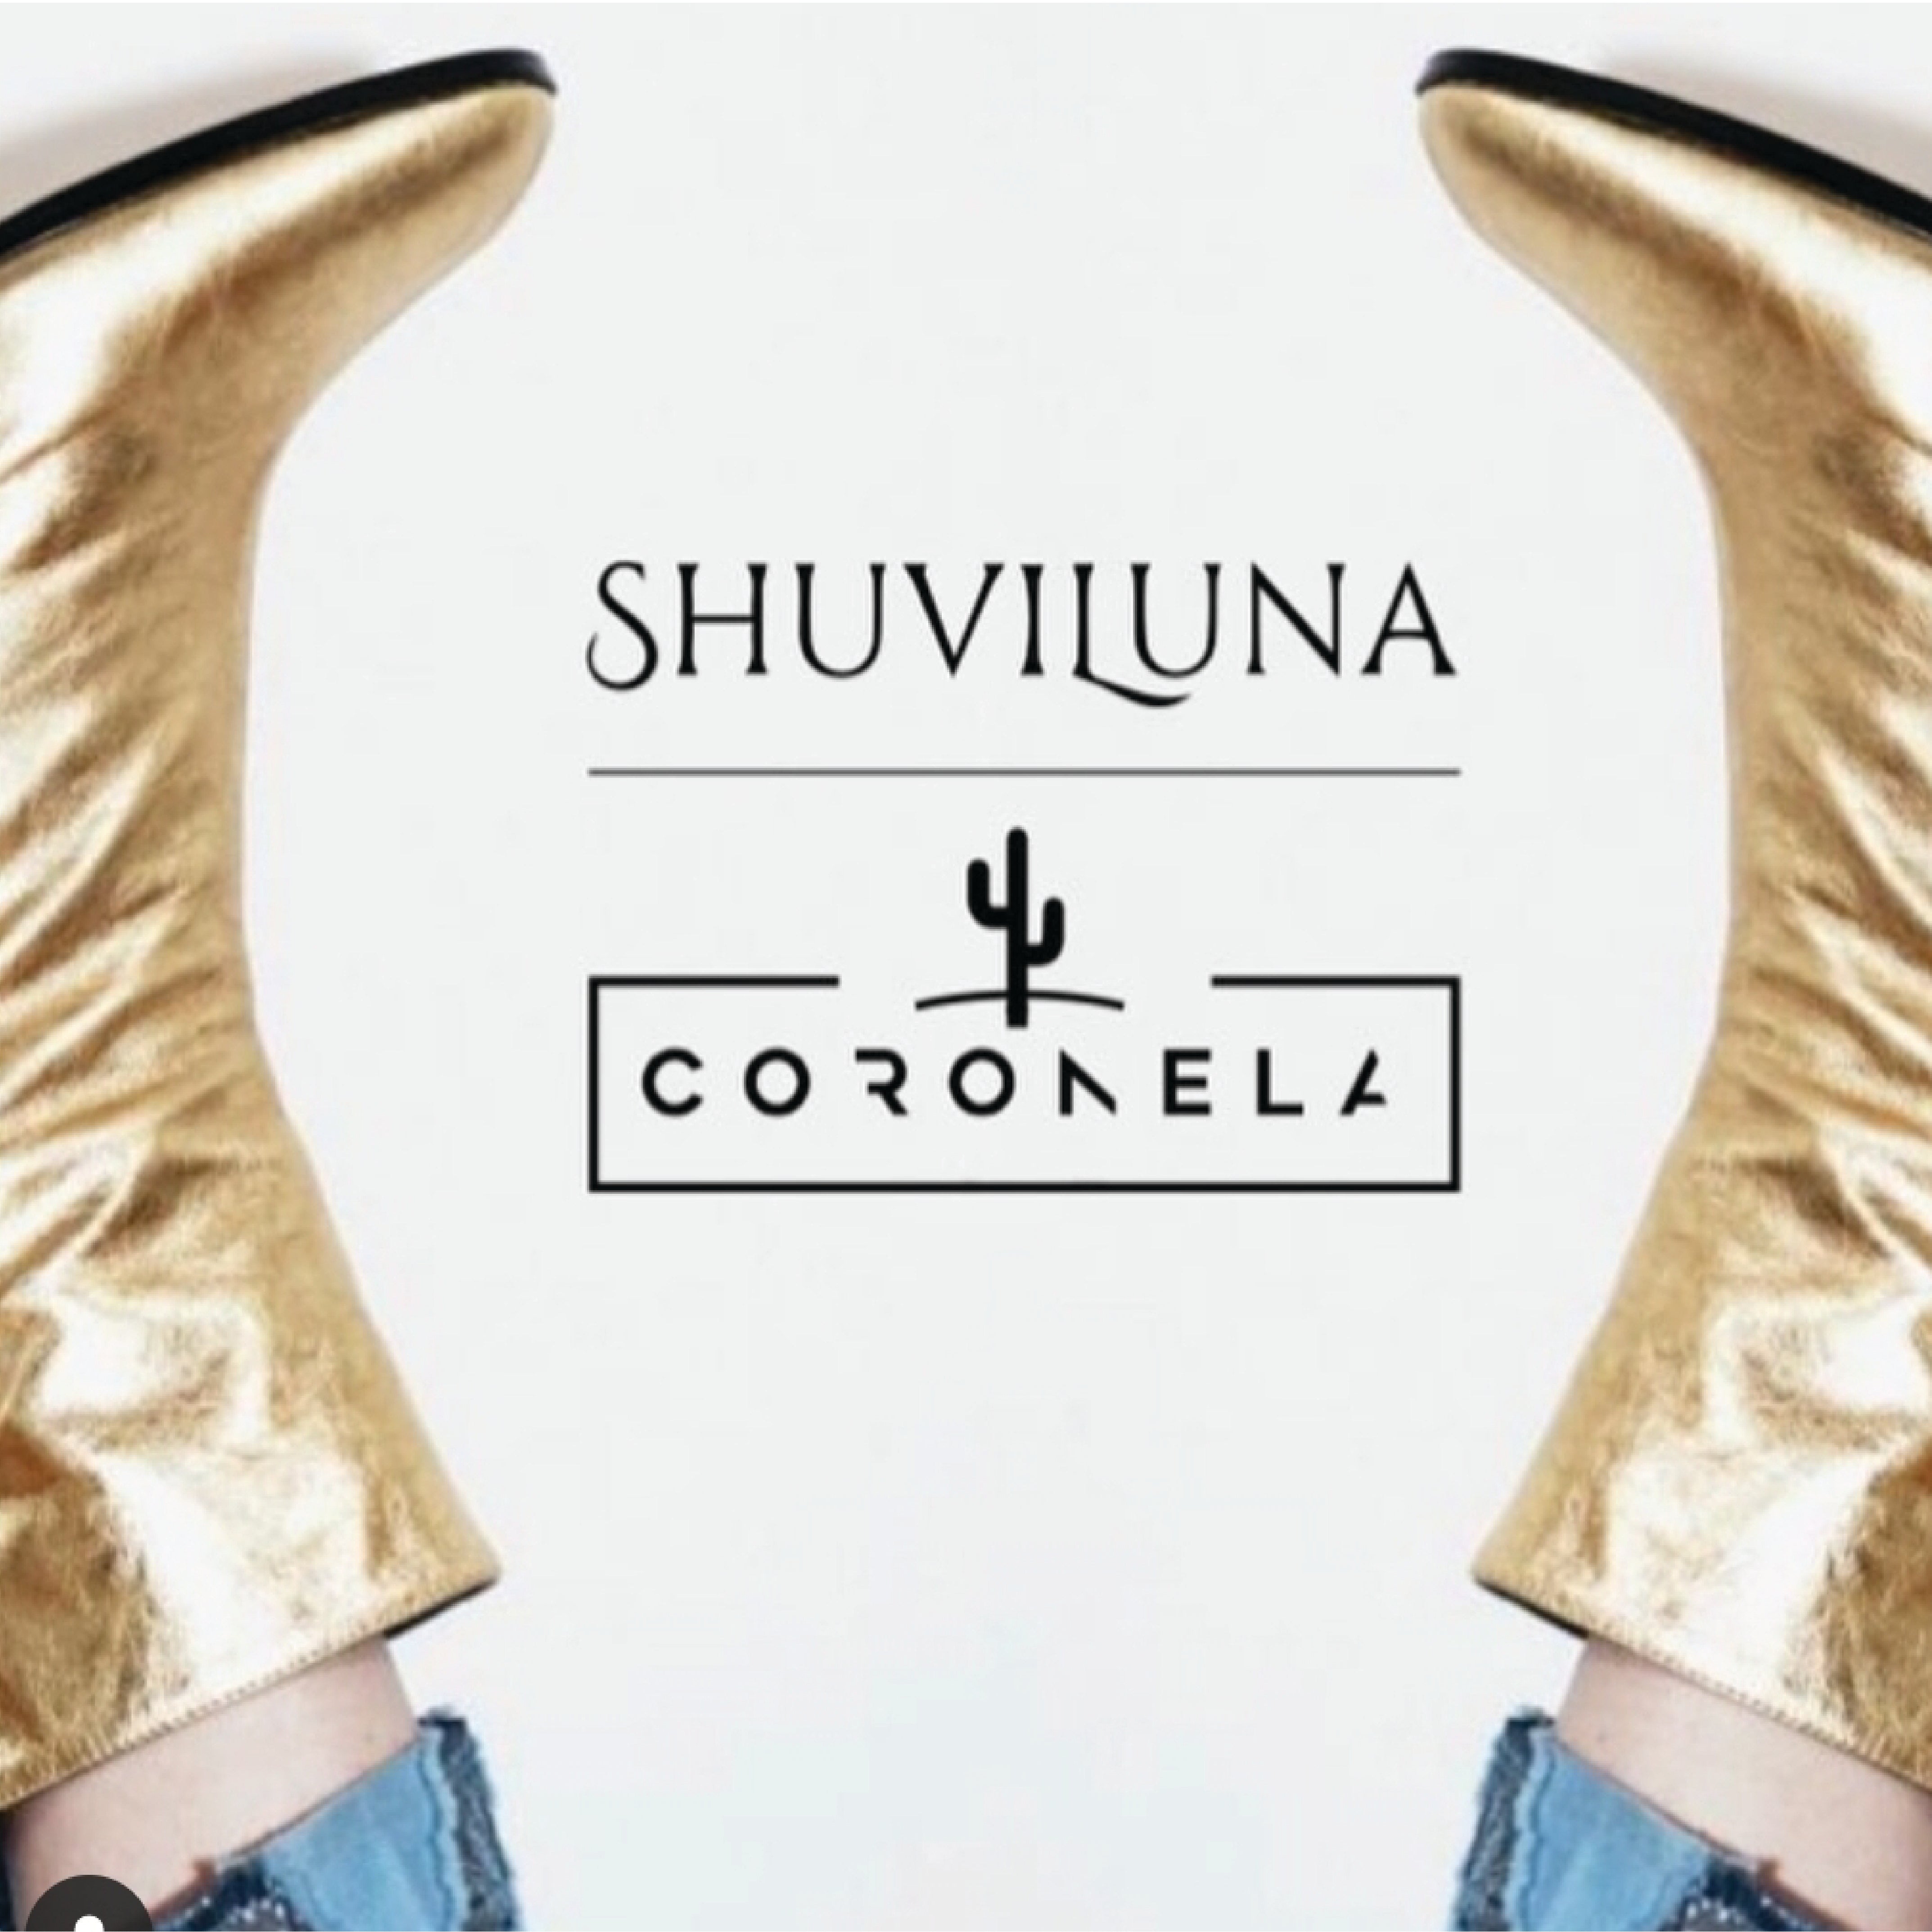 Colección Shine: Shuviluna + Coronela, una fusión con mucho brillo